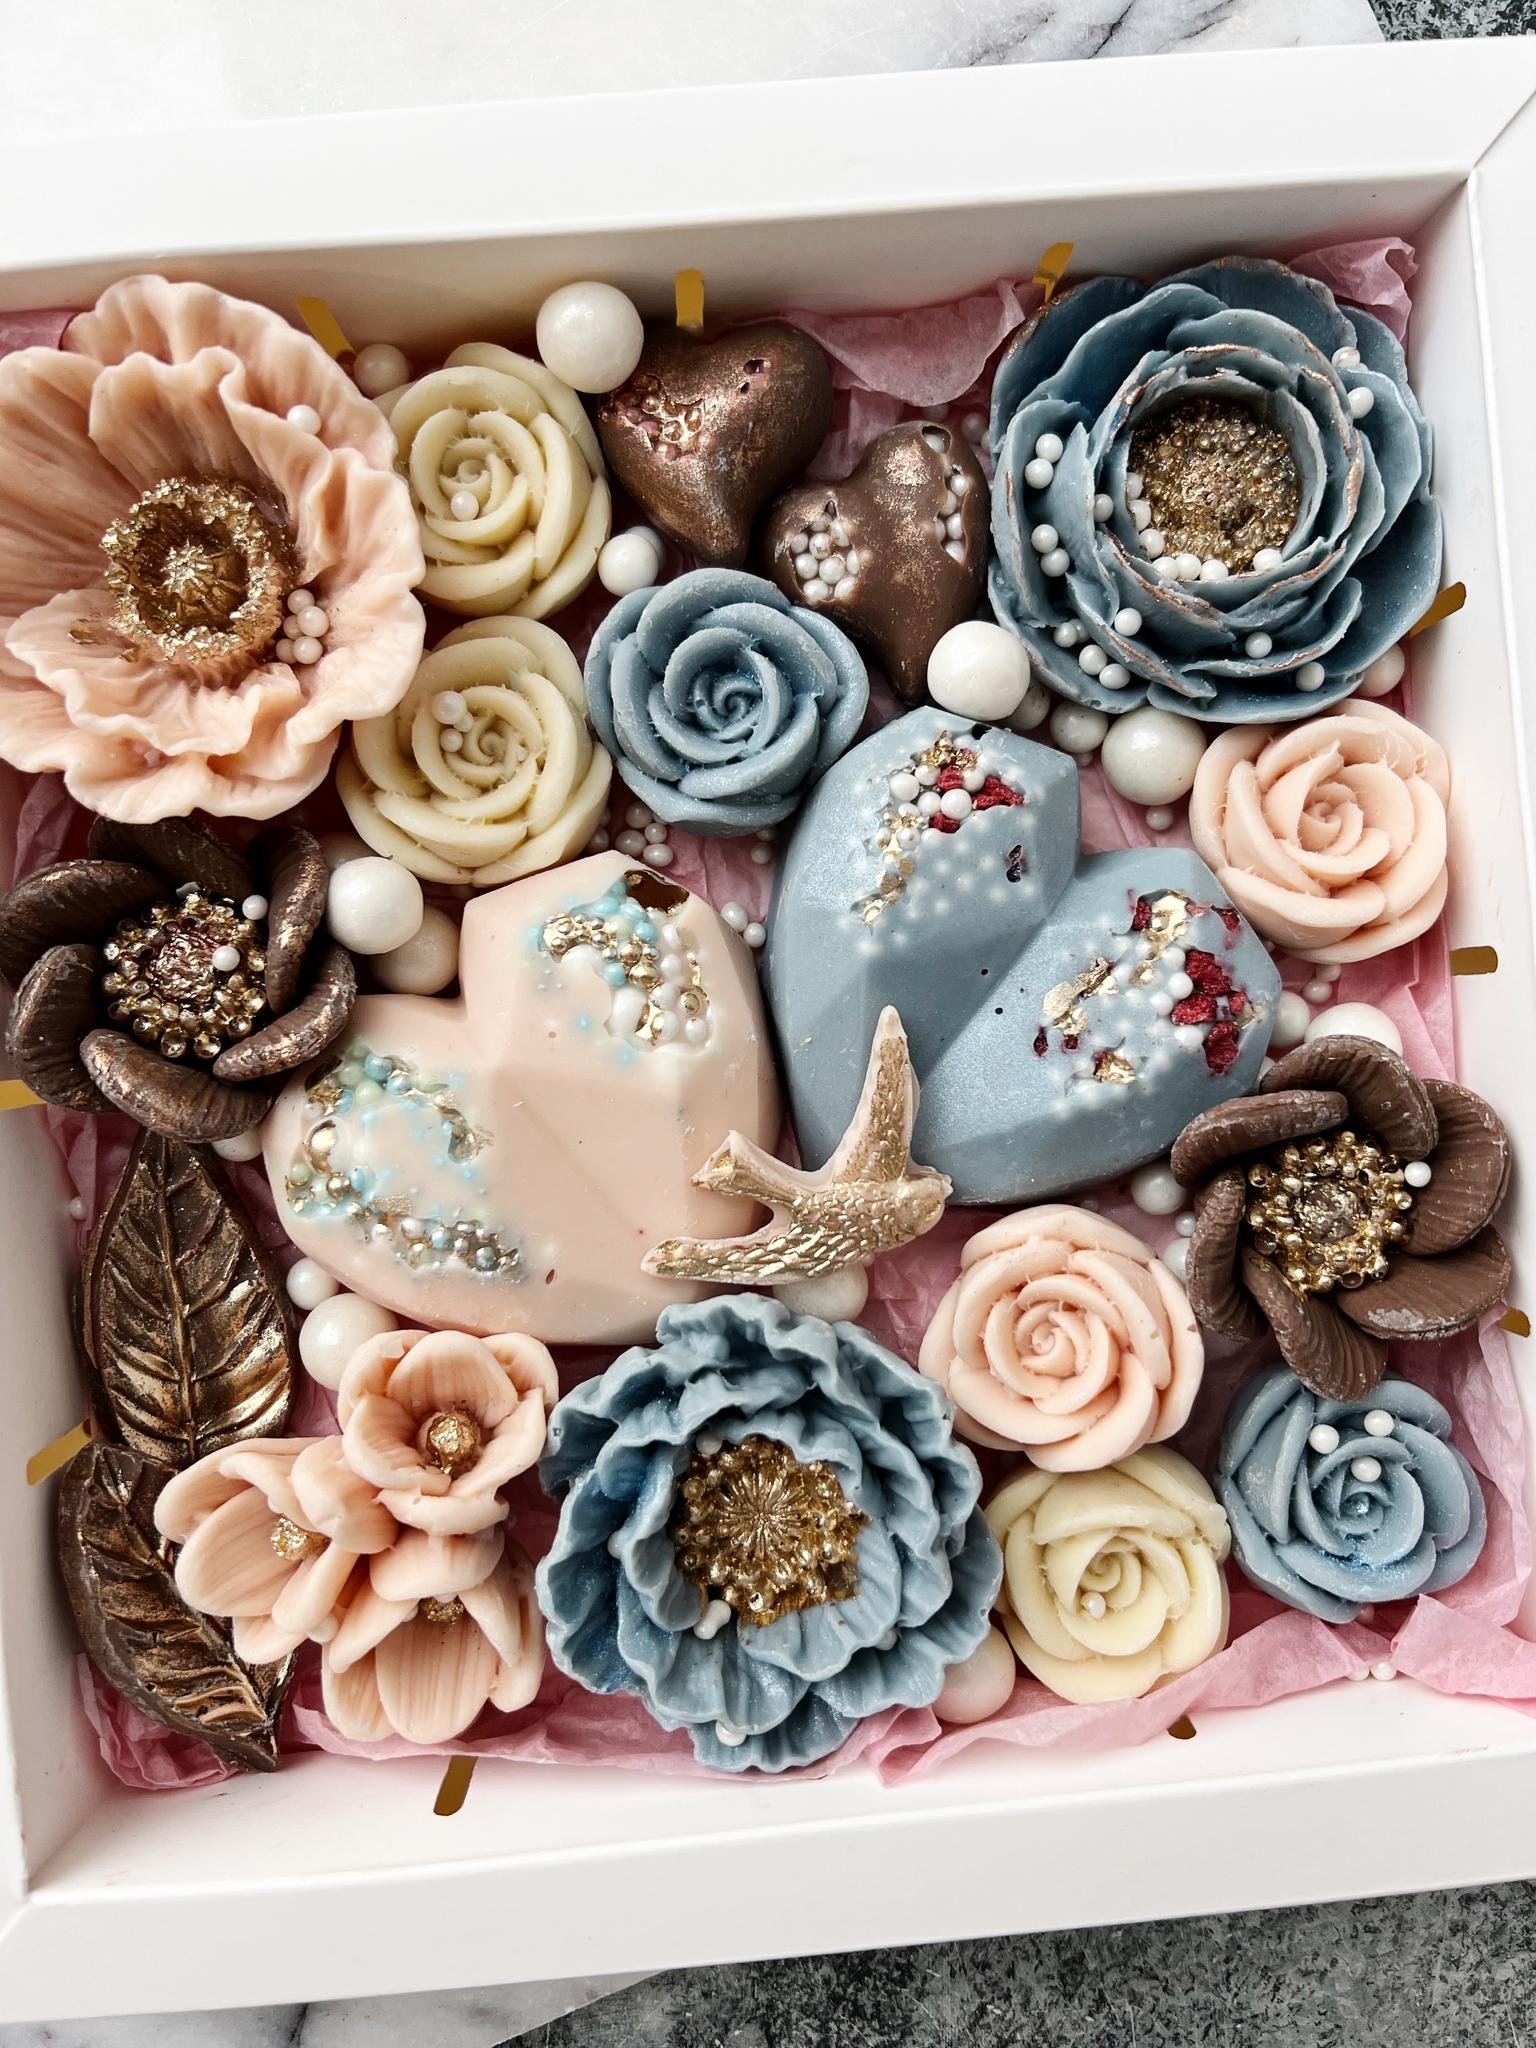 НОВОЕ \u003e Набор из шоколадных конфет в форме сердец и цветов из белого имолочного шоколада купить в интернет-магазине